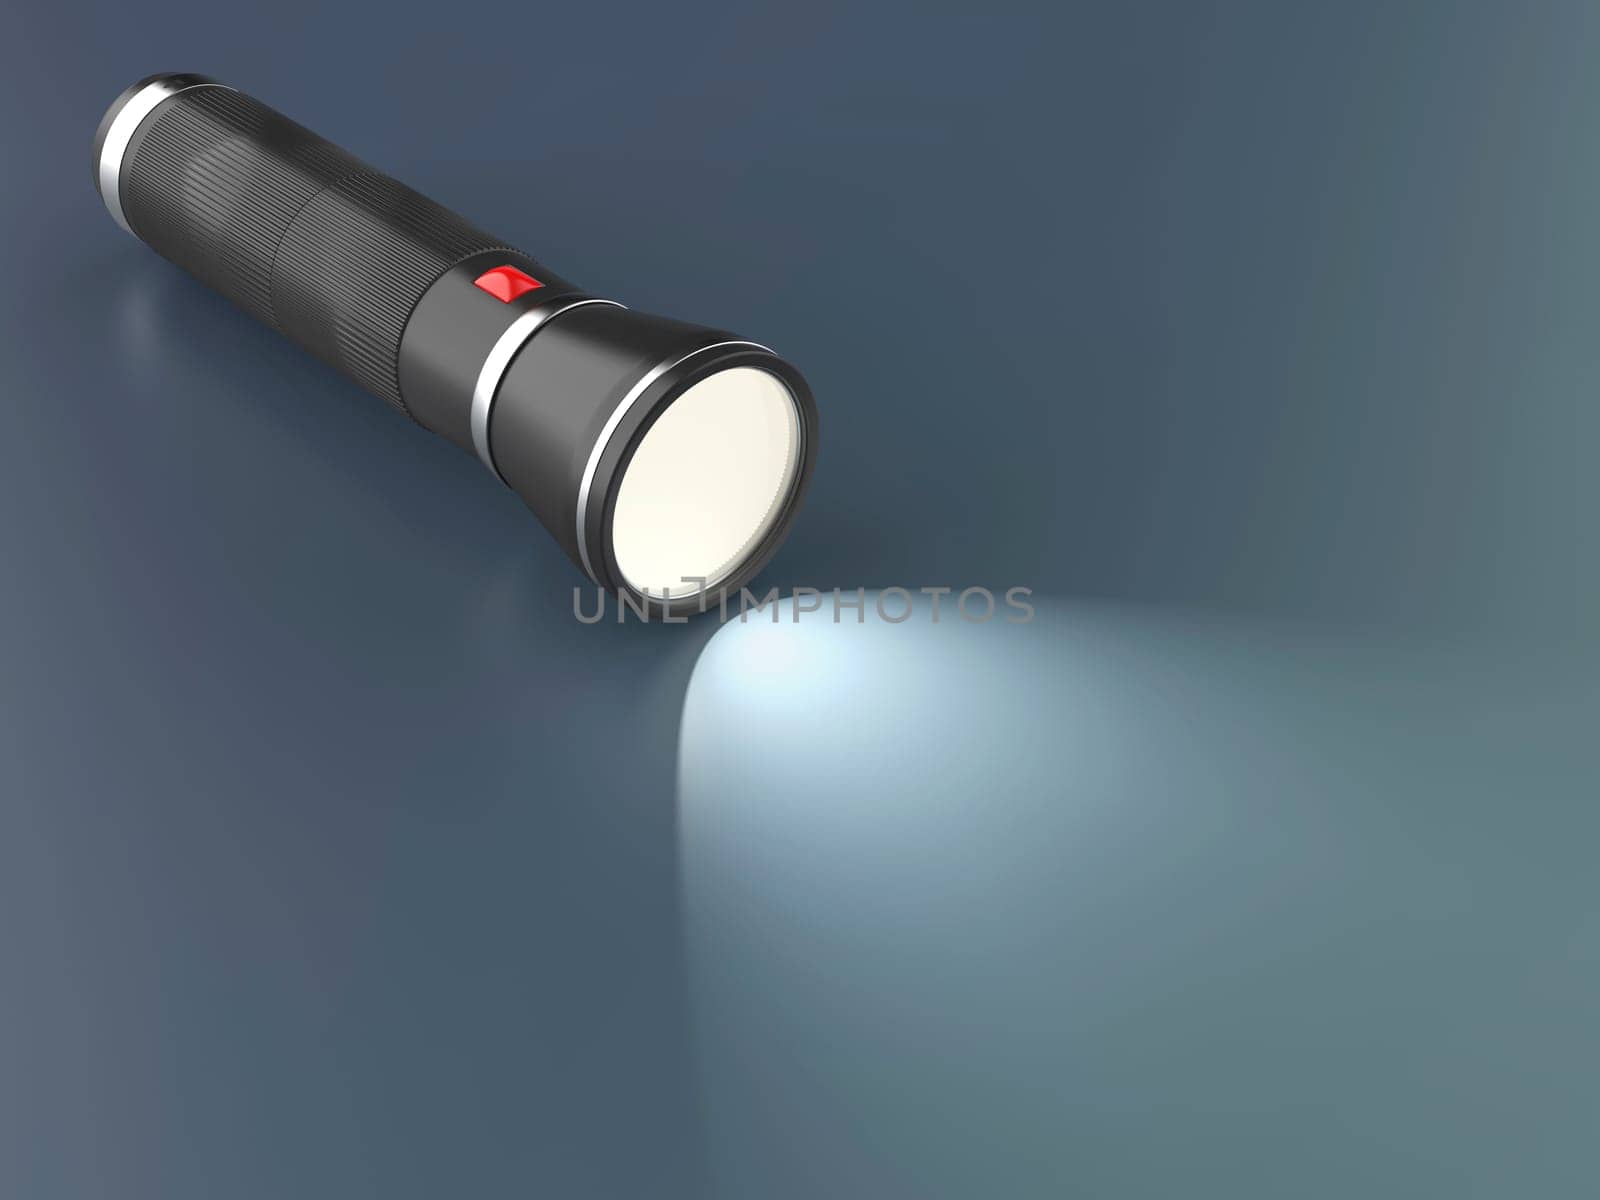 Modern led flashlight illuminates the dark background